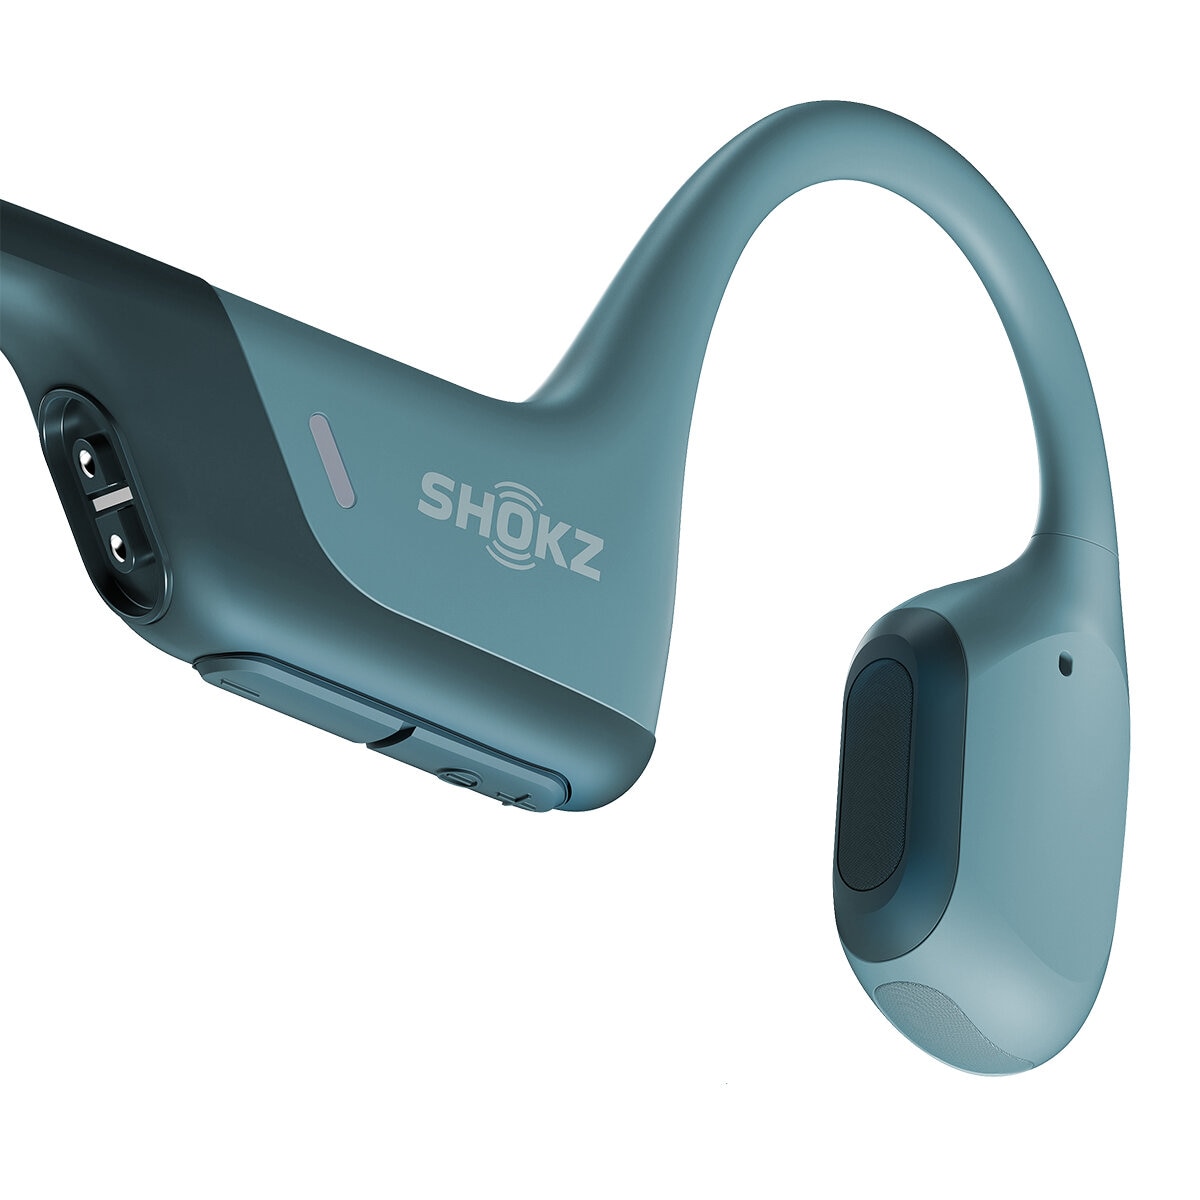 Shokz OpenRun Pro Auriculares Deportivos Inalámbricos Azules